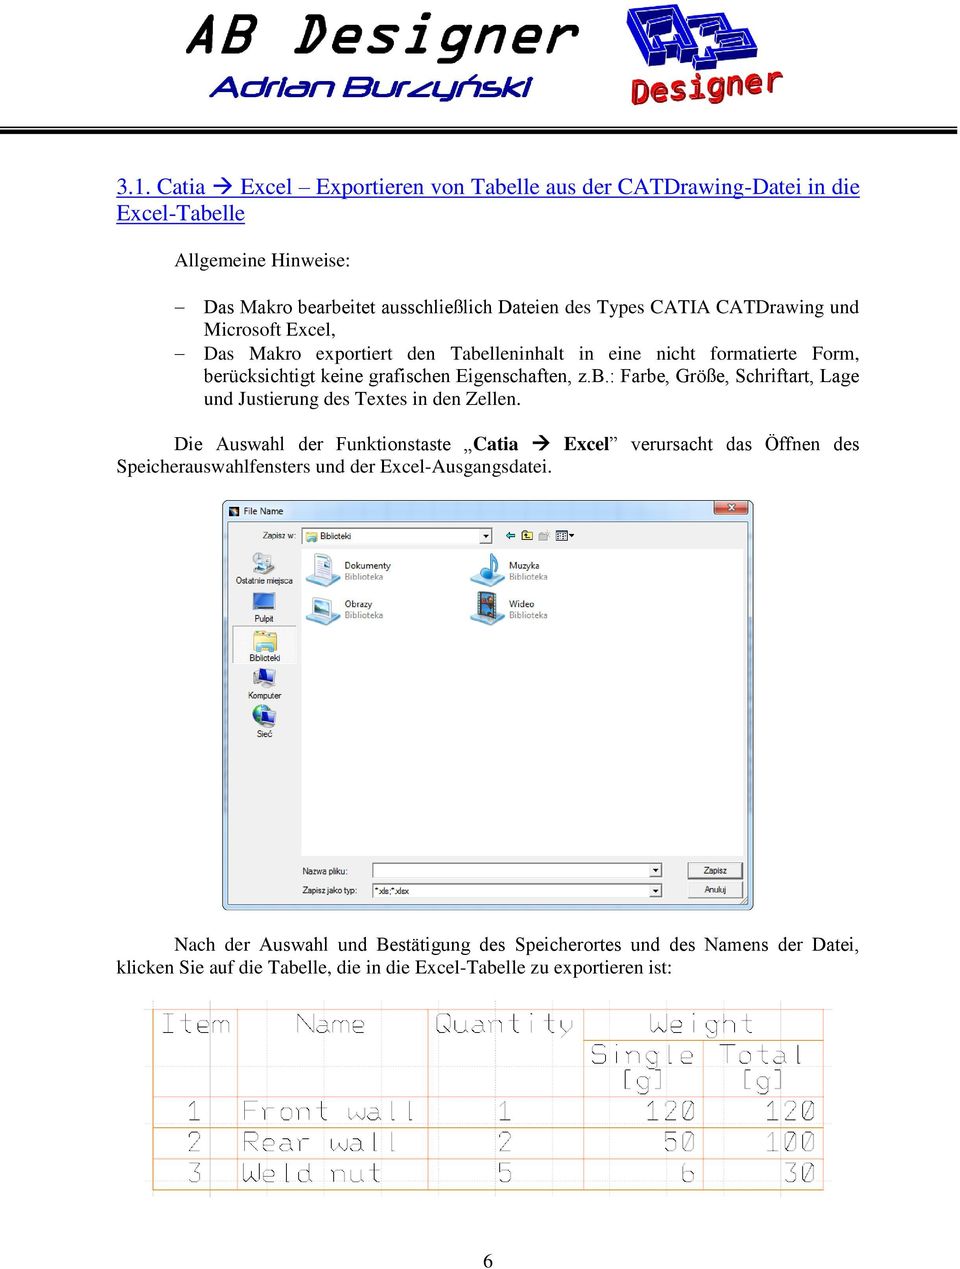 Die Auswahl der Funktionstaste Catia Excel verursacht das Öffnen des Speicherauswahlfensters und der Excel-Ausgangsdatei.